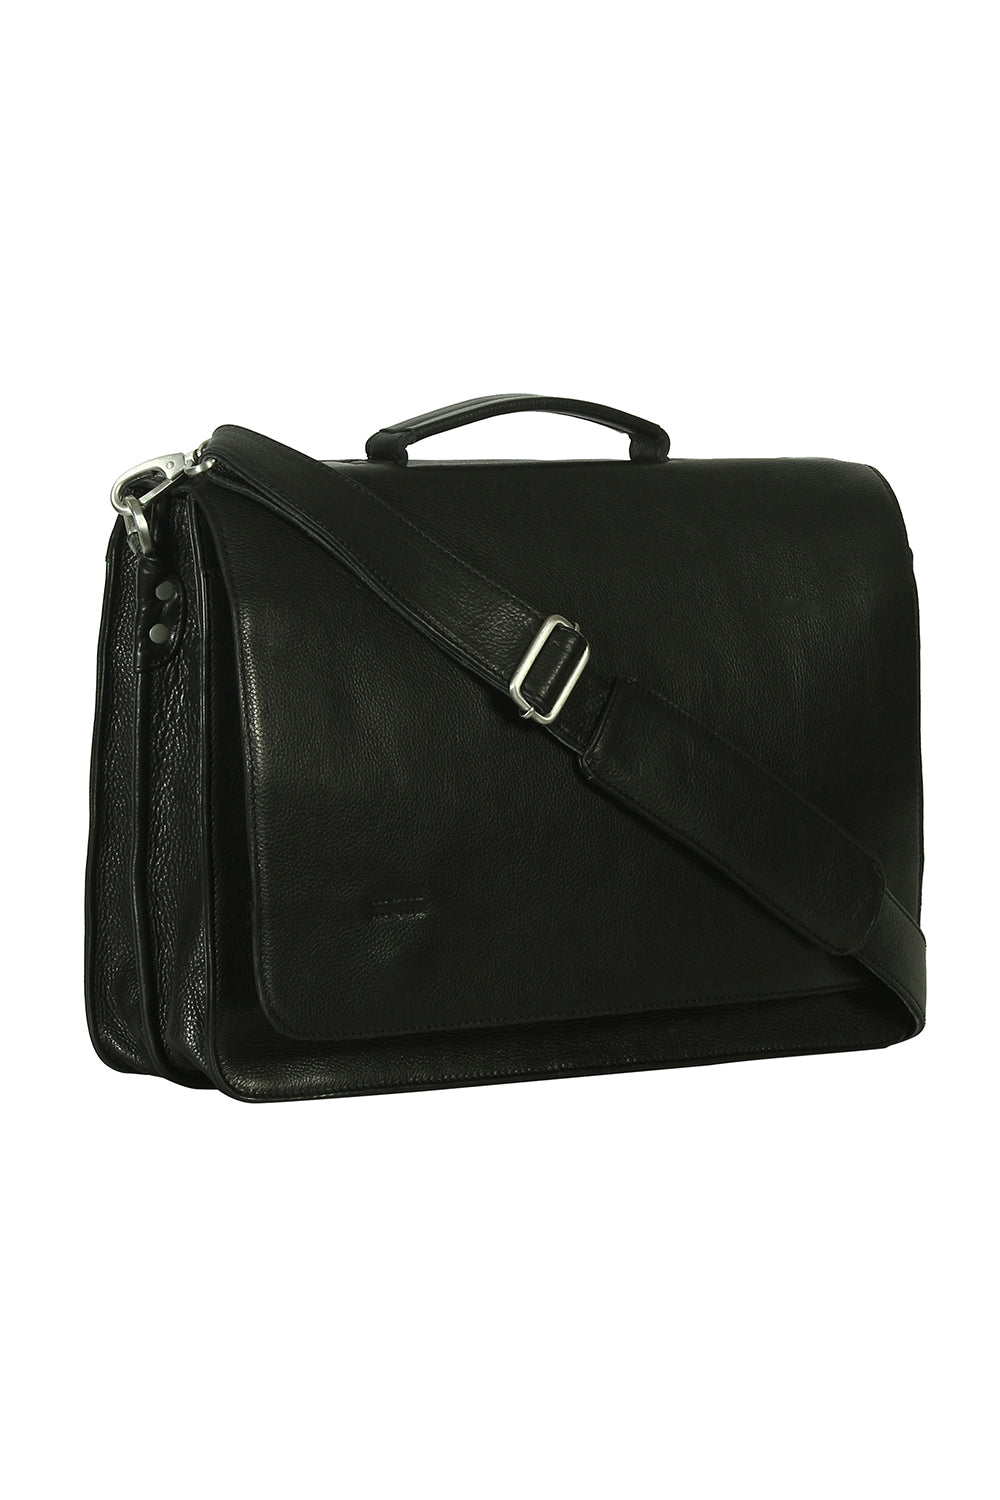 Paris classic laptop/ briefcase bag